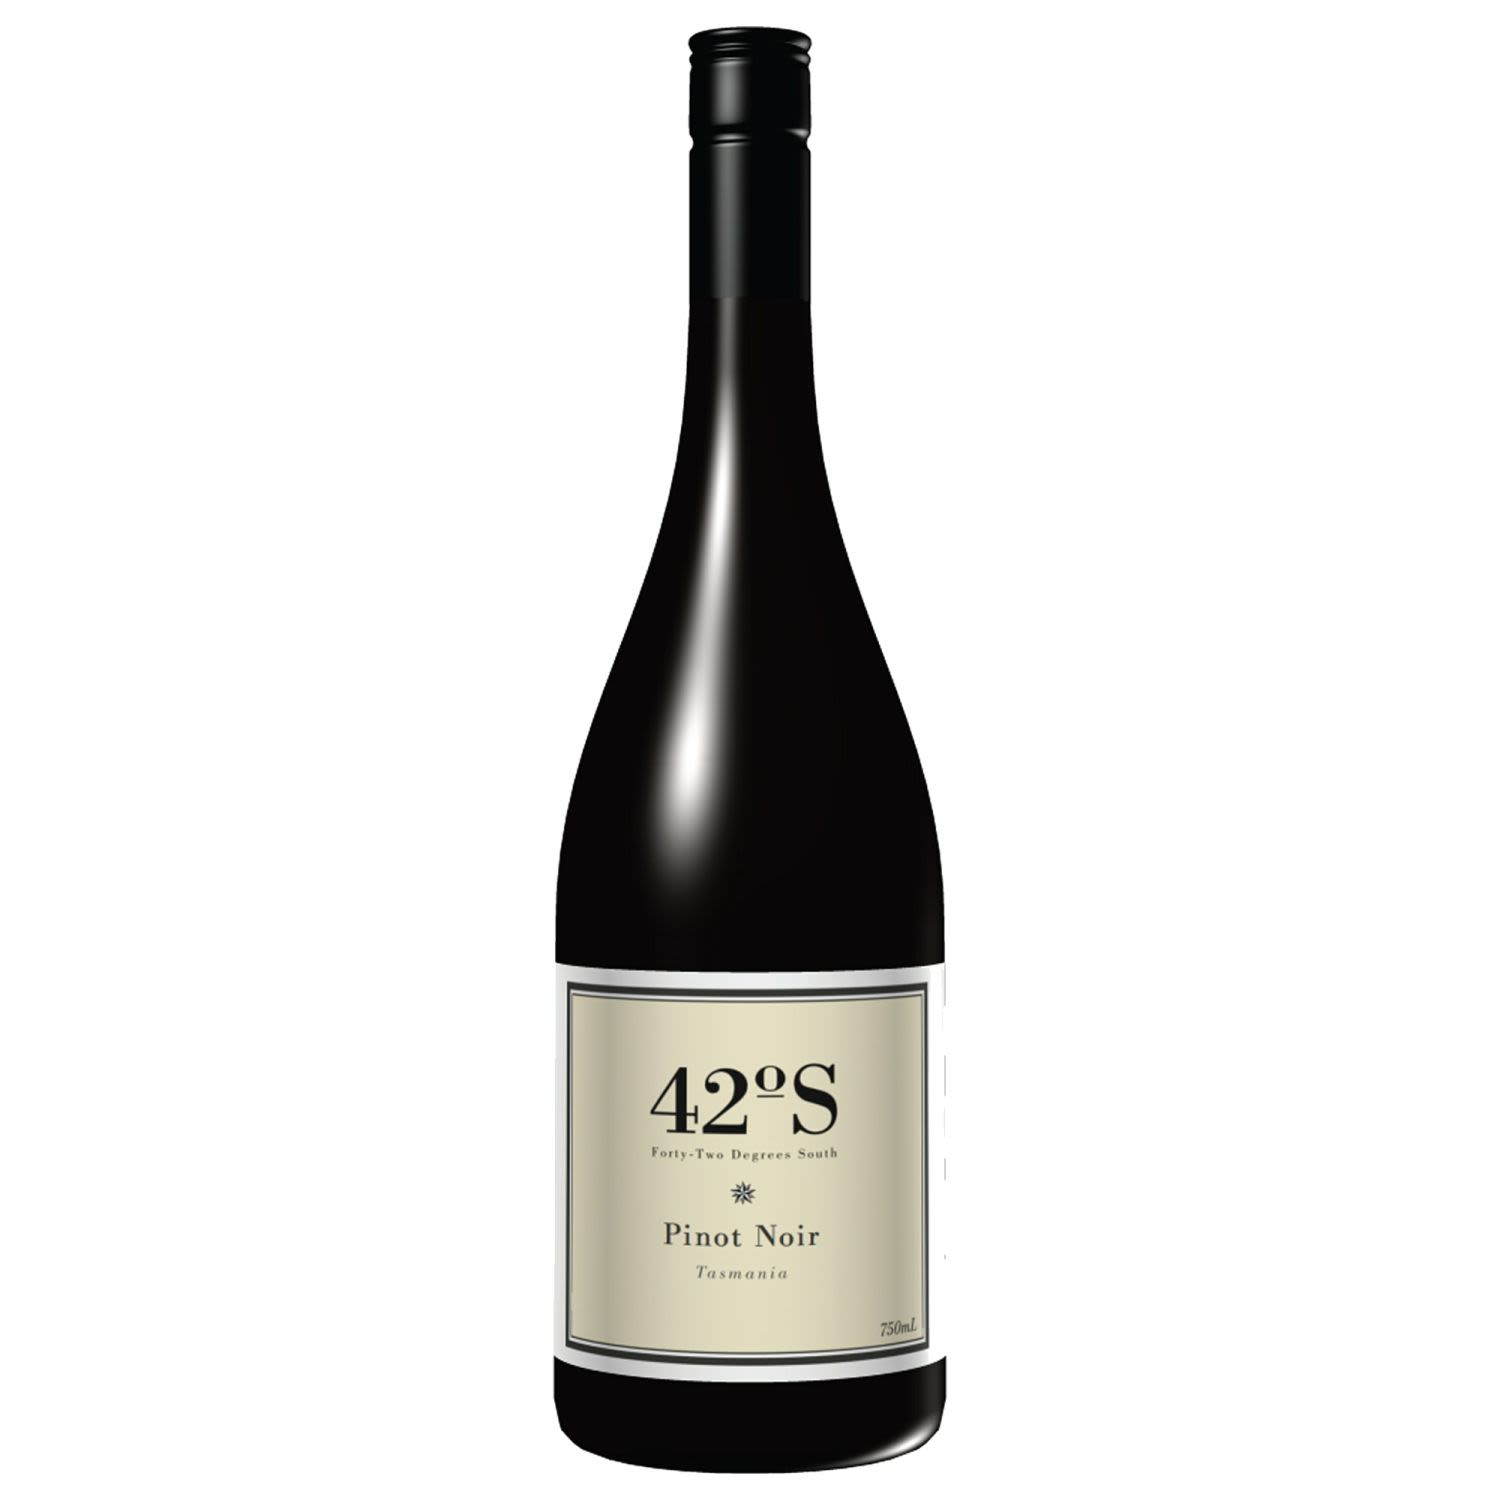 42 Degrees South Pinot Noir 750mL Bottle